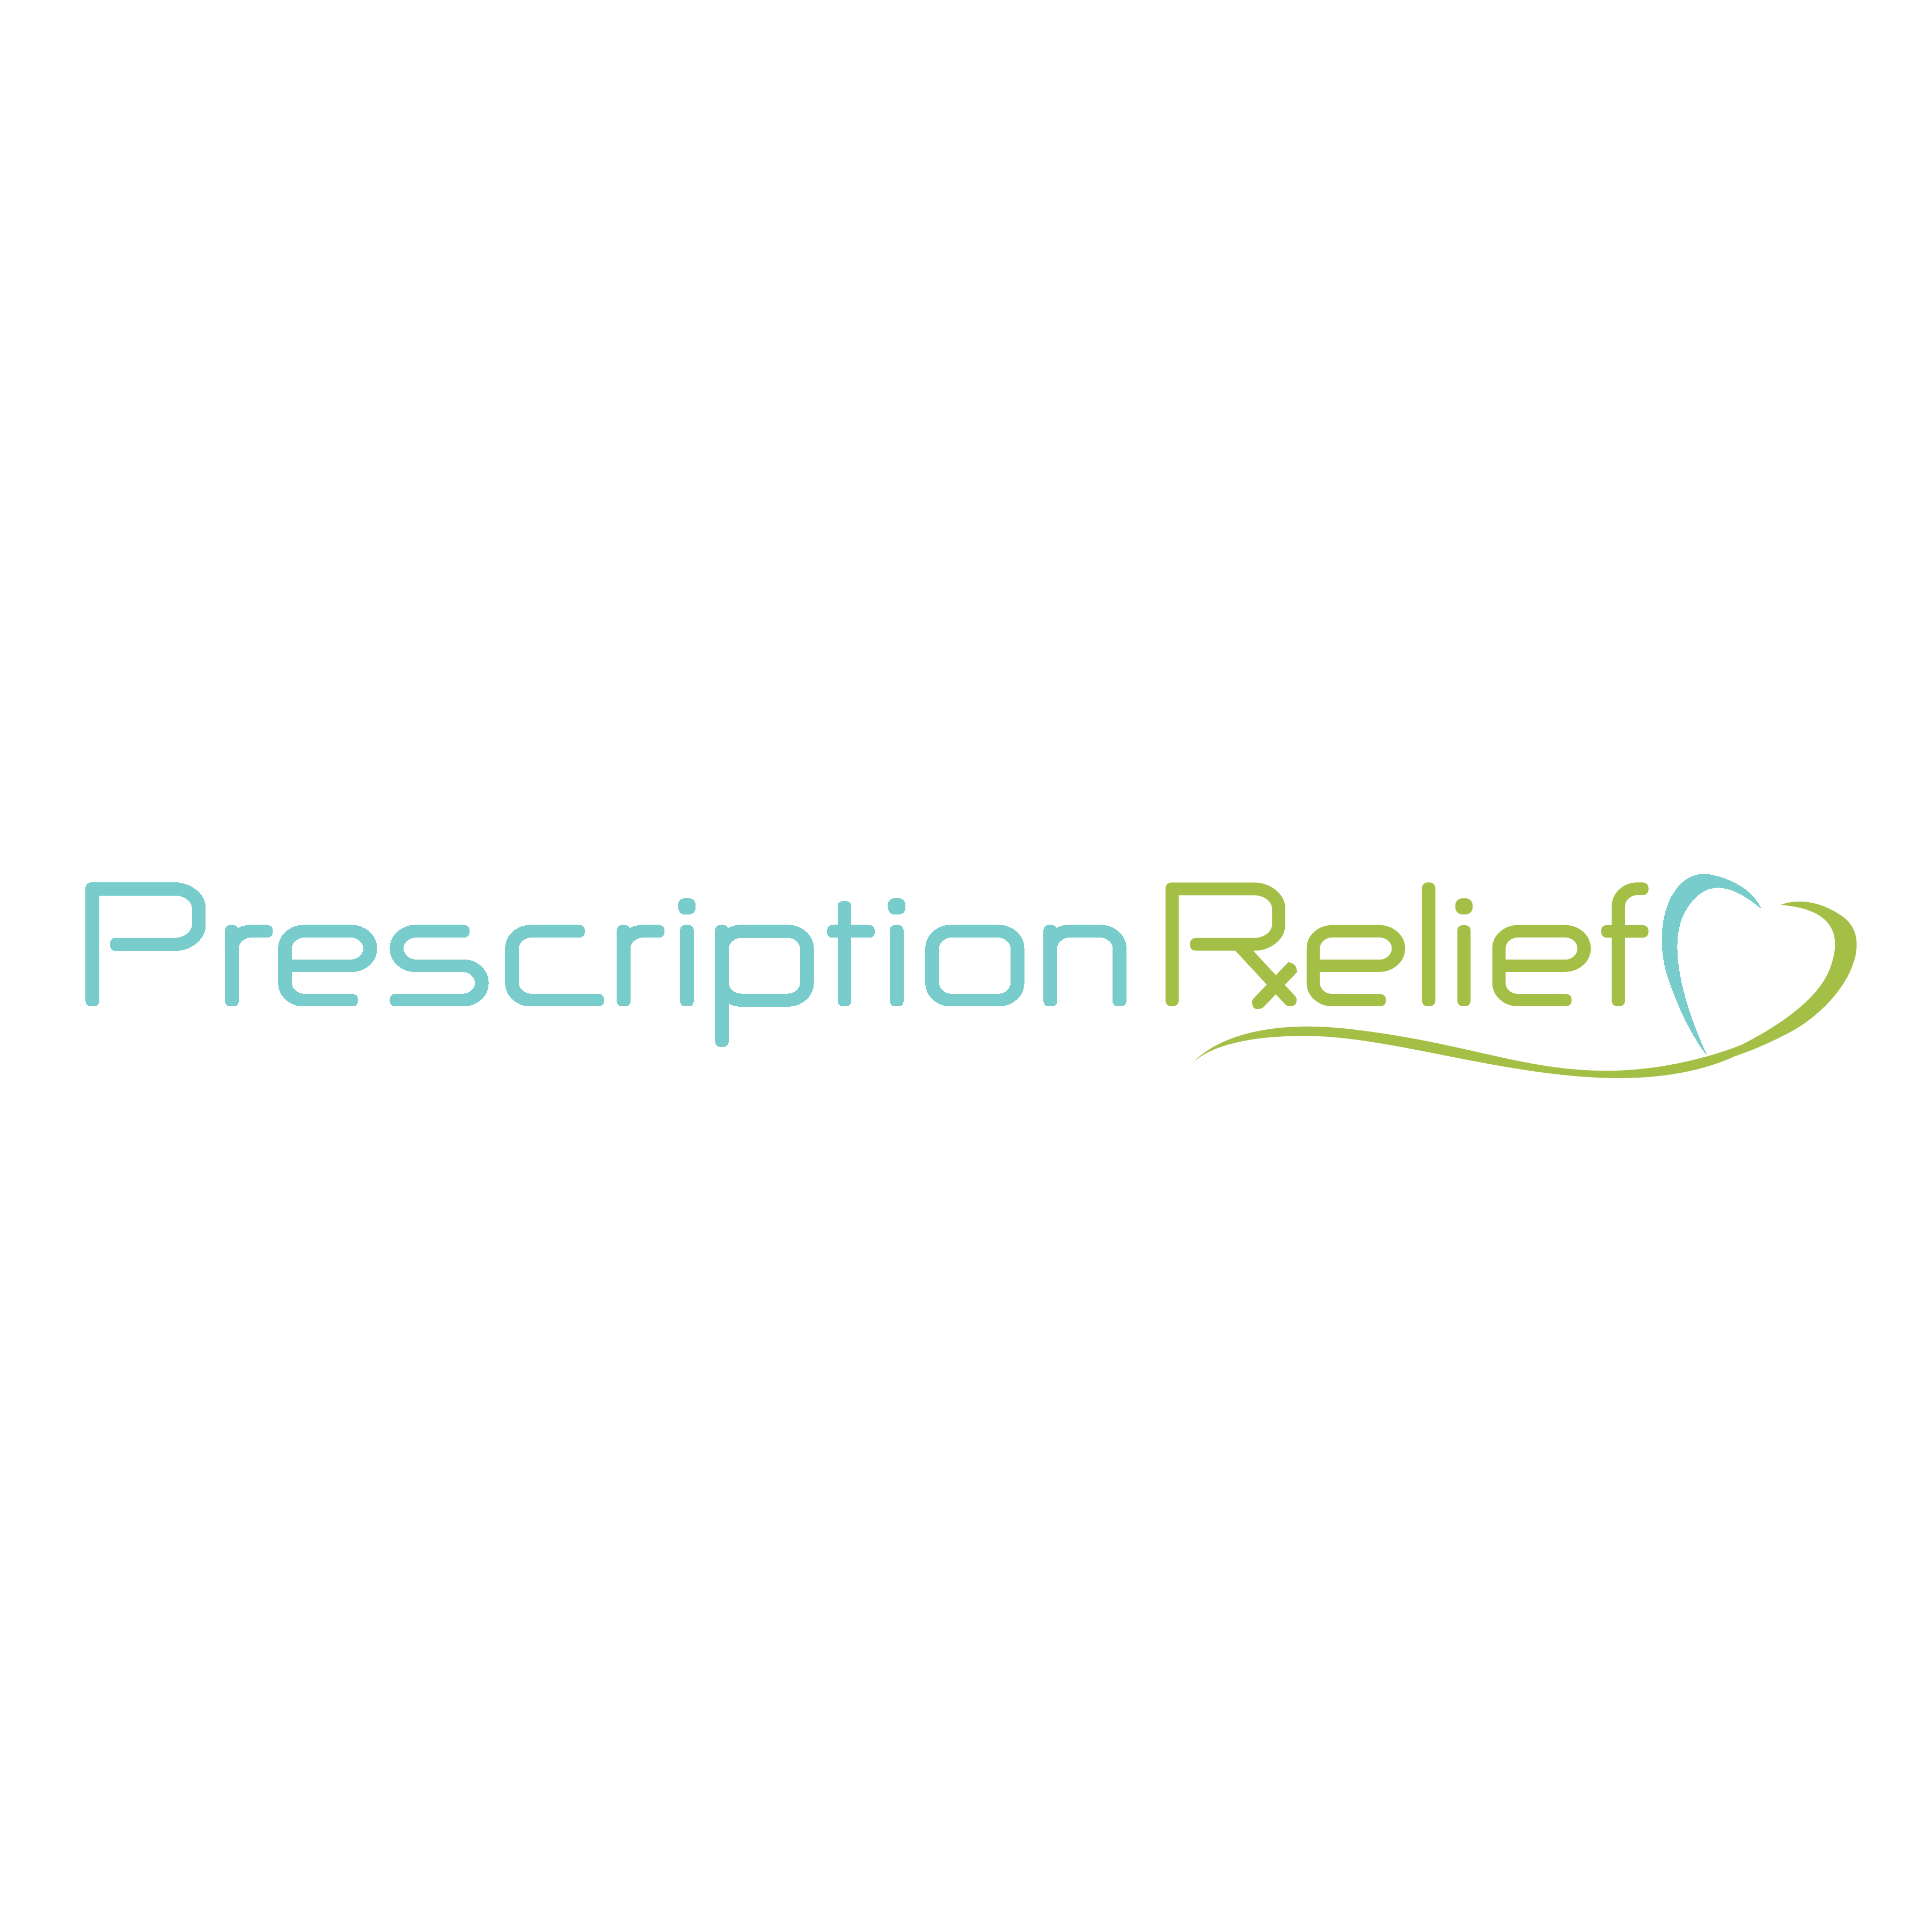 Find Prescription Relief Photo